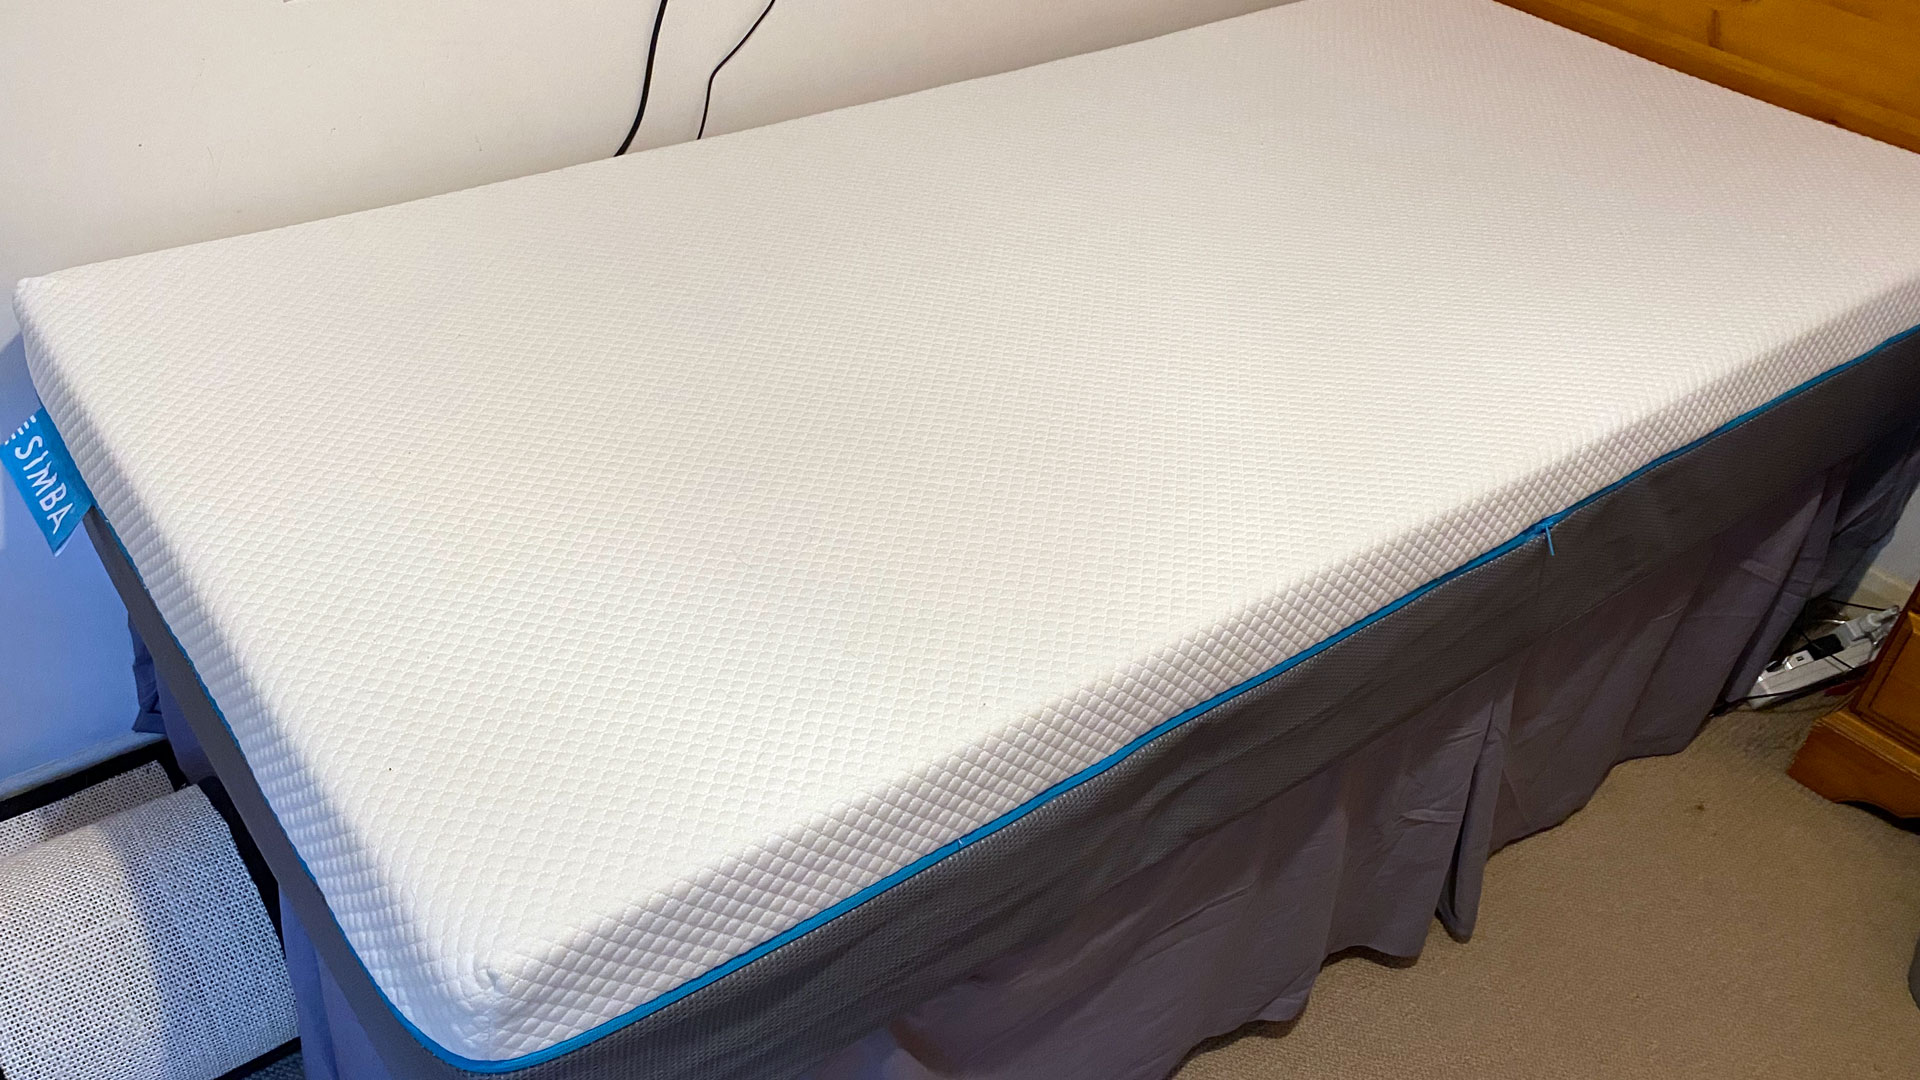 A Simbatex Foam Mattress on a bed